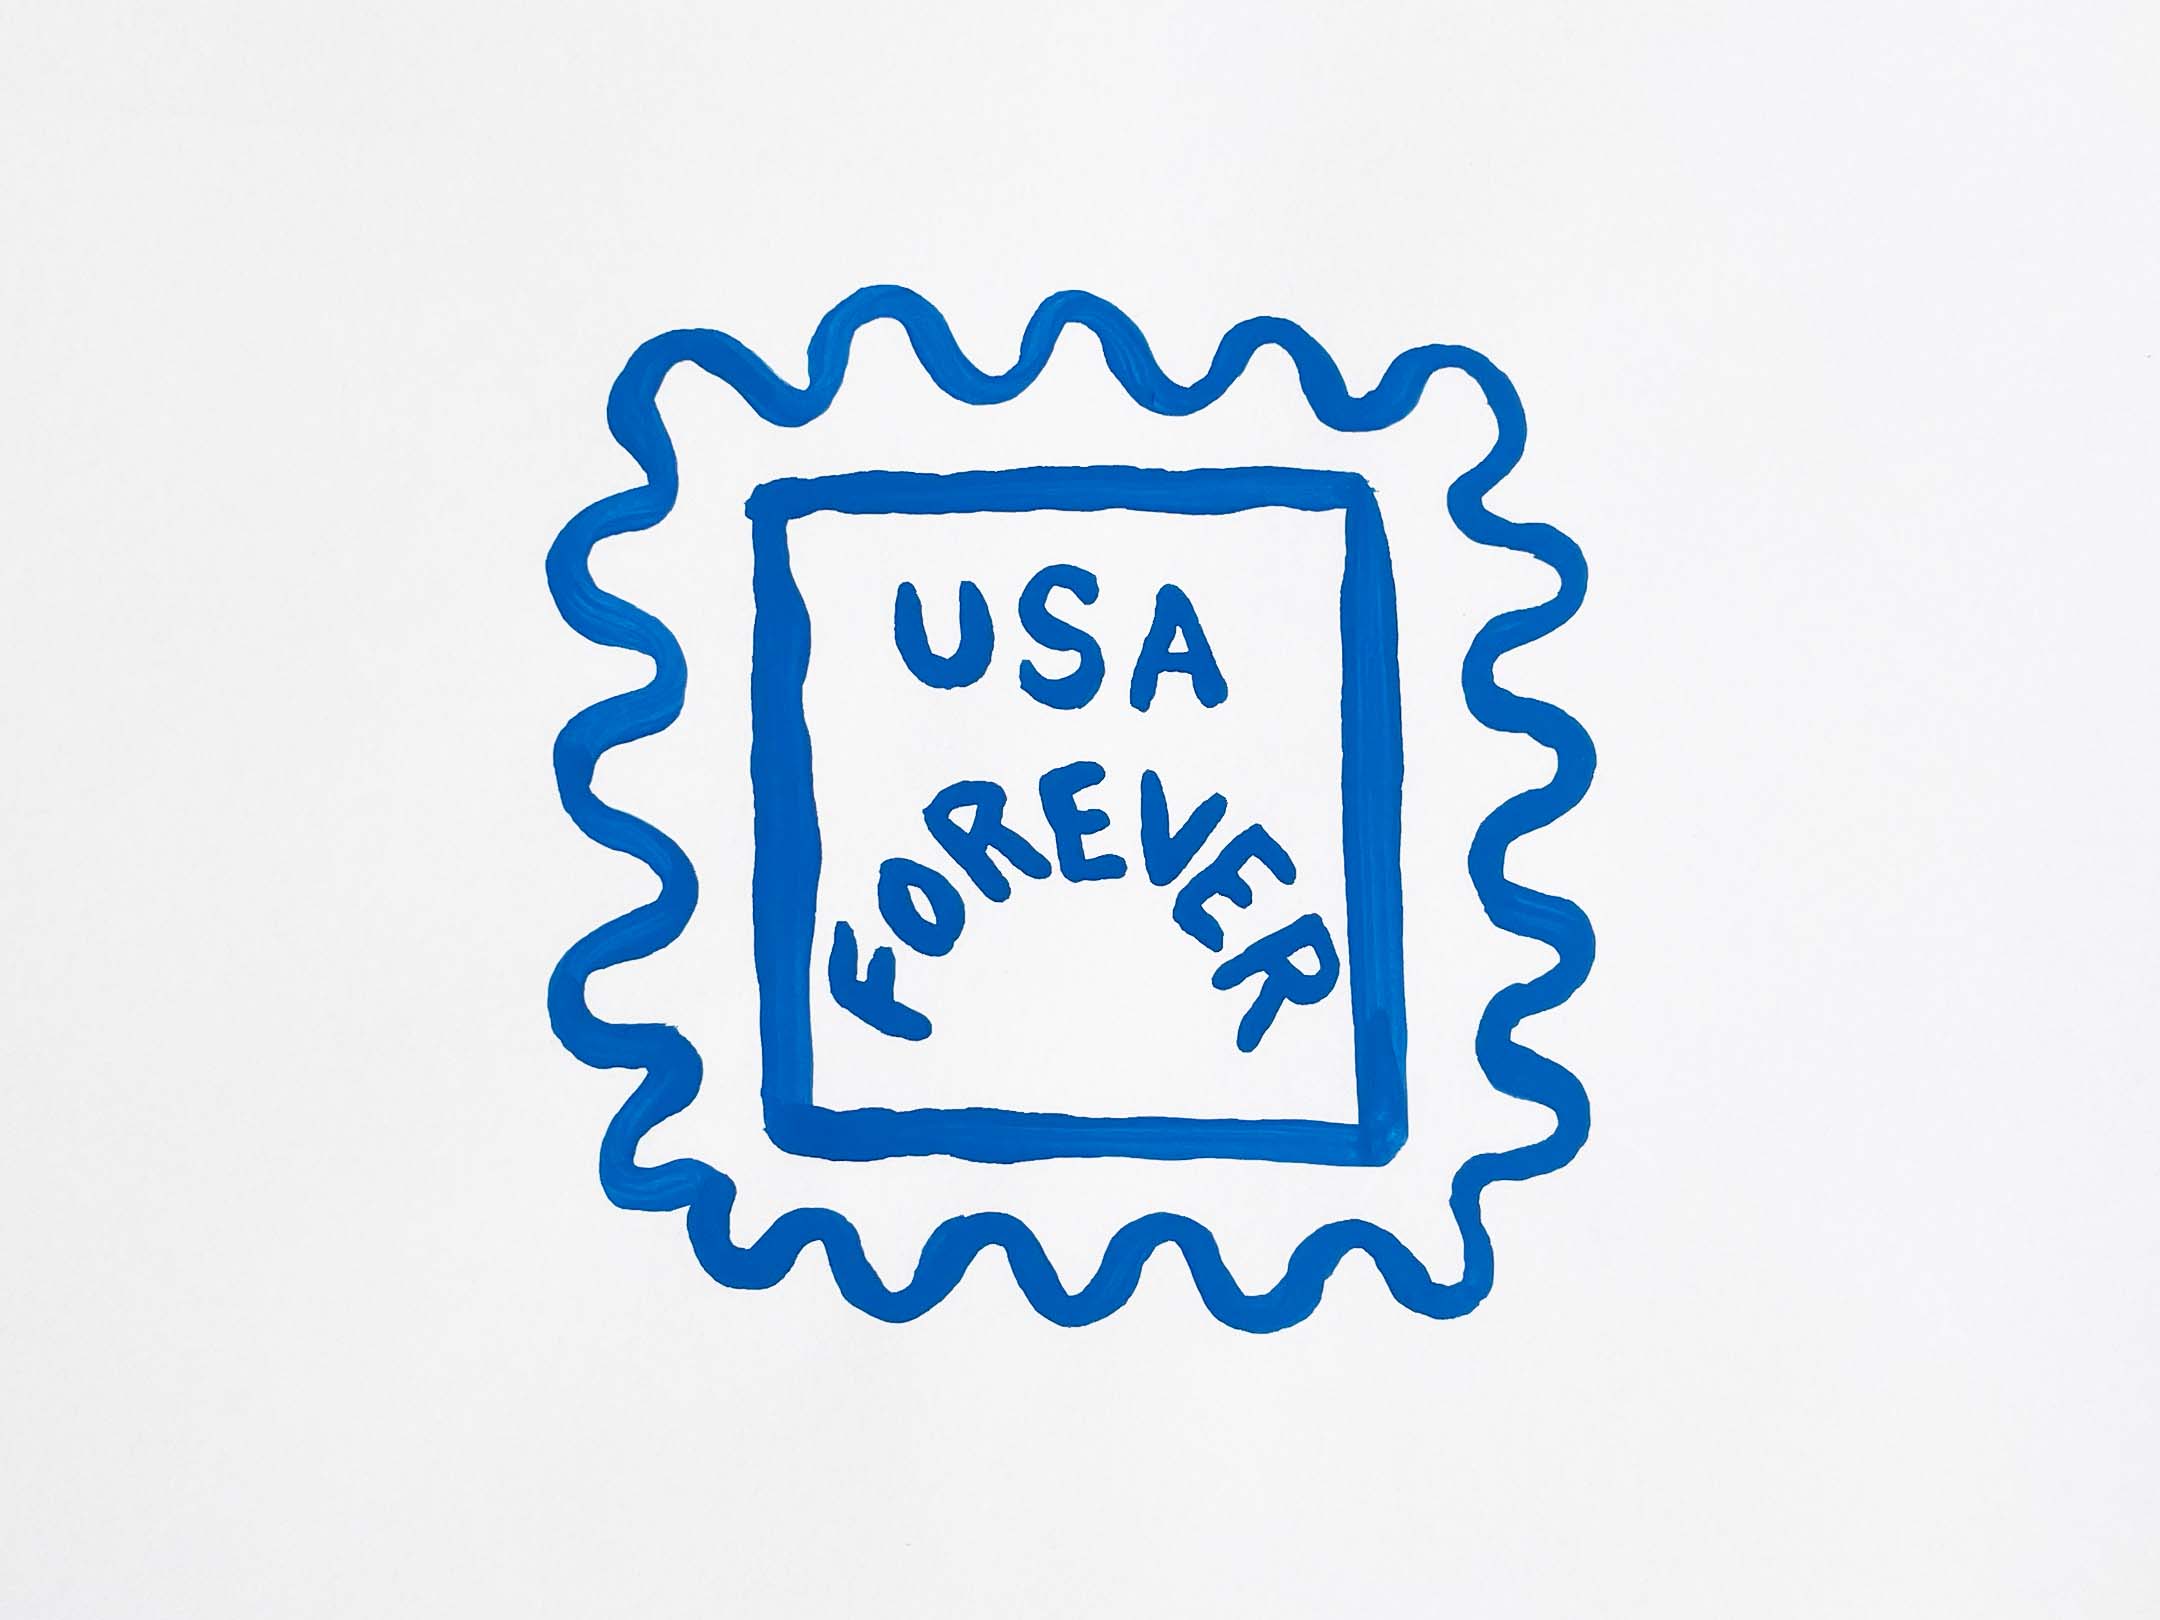 USA Forever Stamp